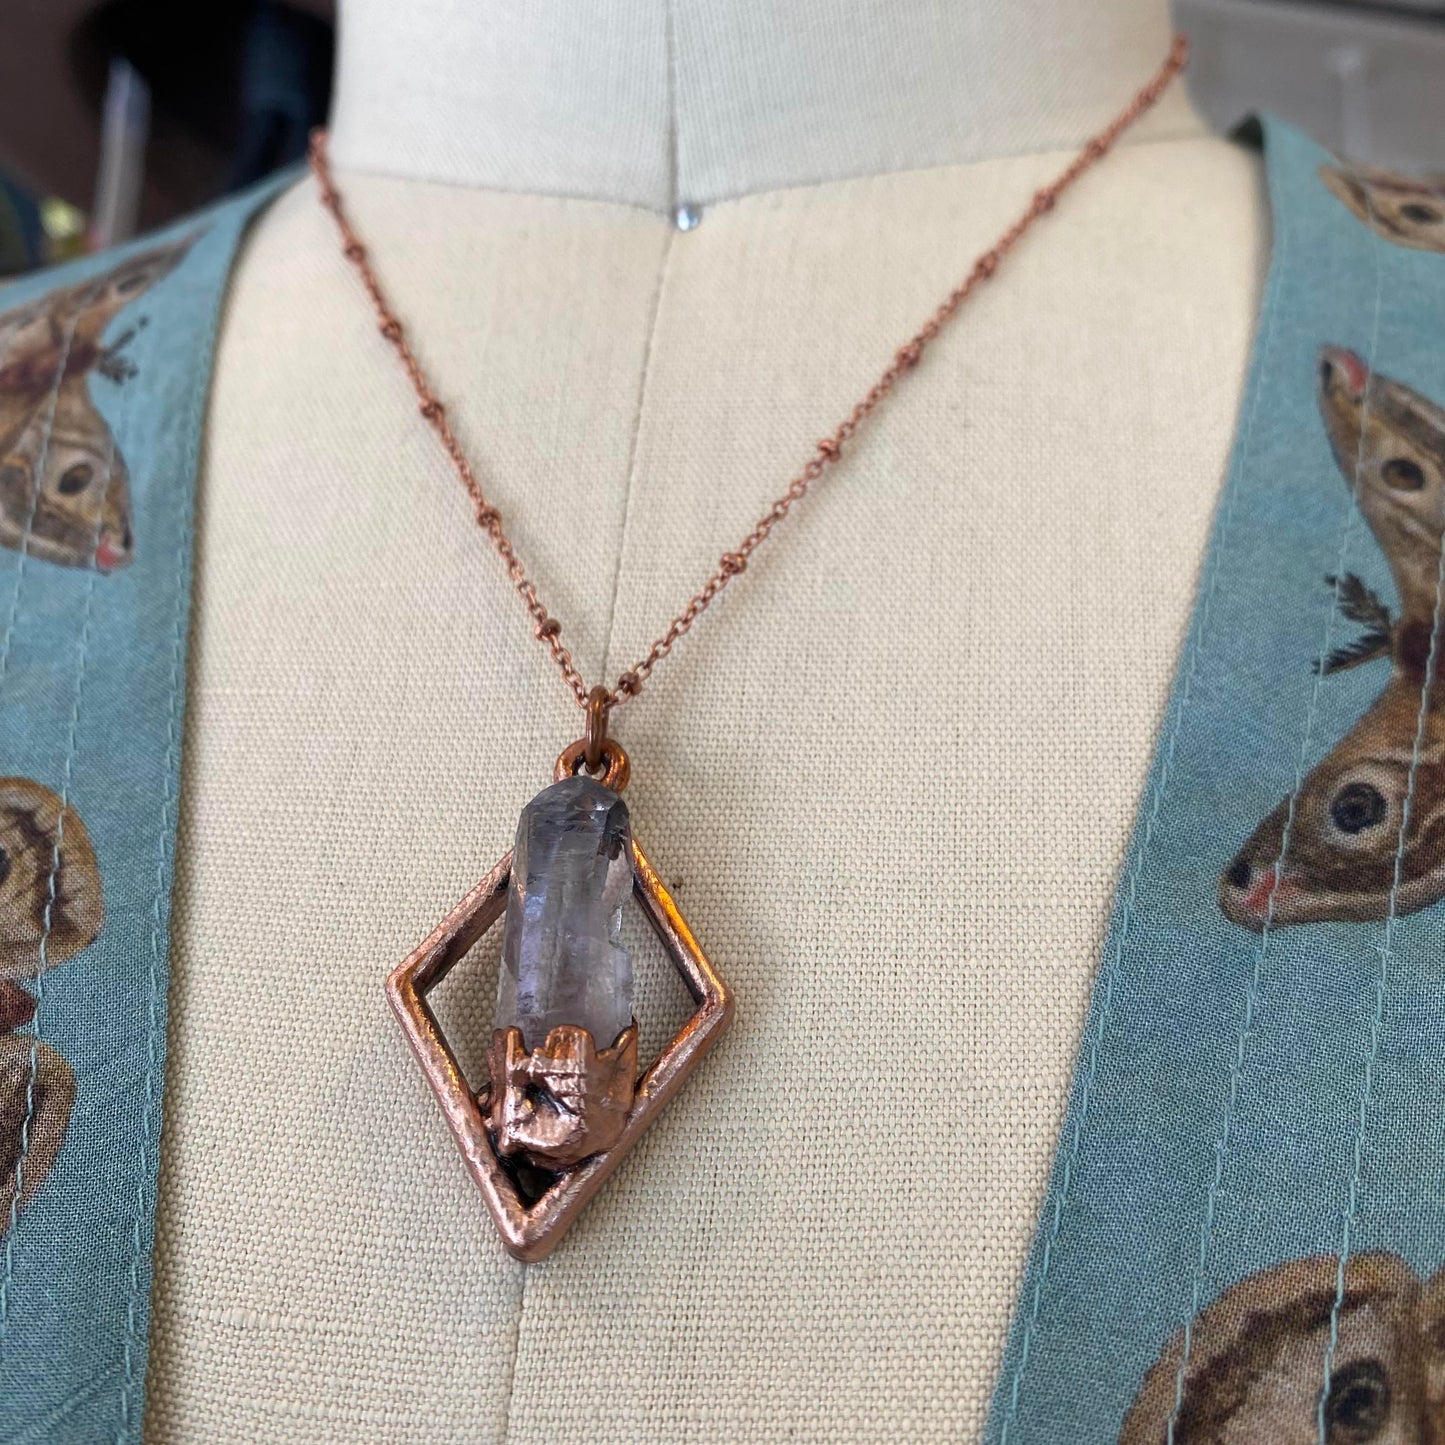 Vera Cruz Amethyst Diamond Necklace - La De Da